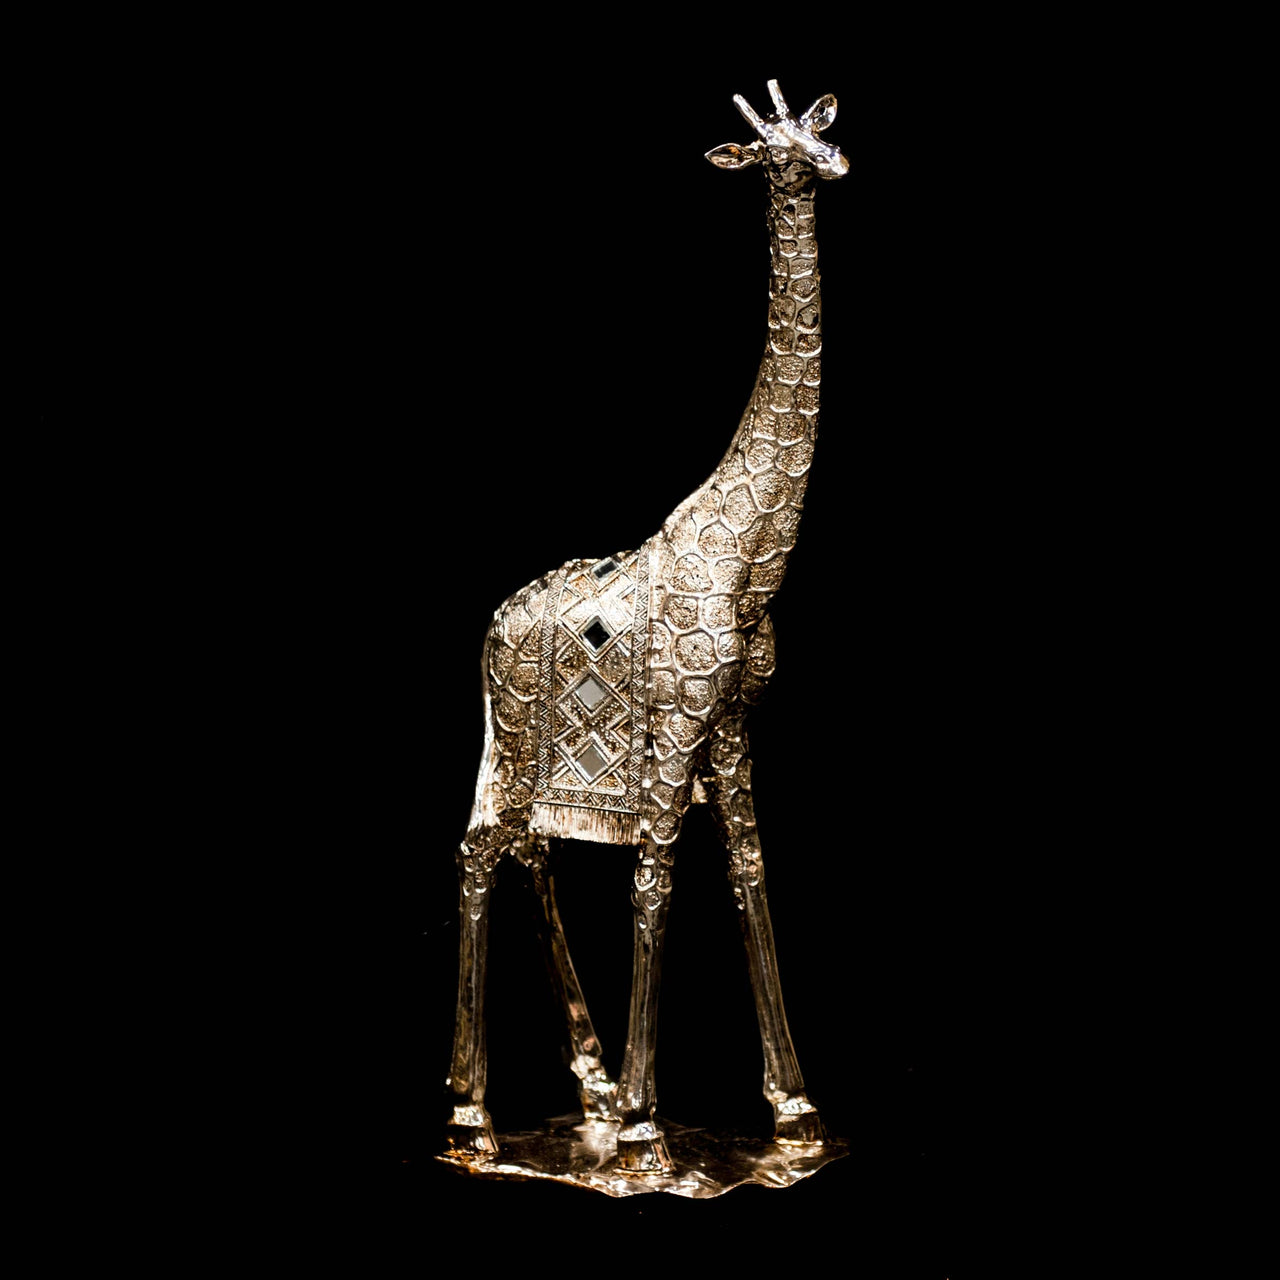 HCHD5415 - Giraffe Facing Left